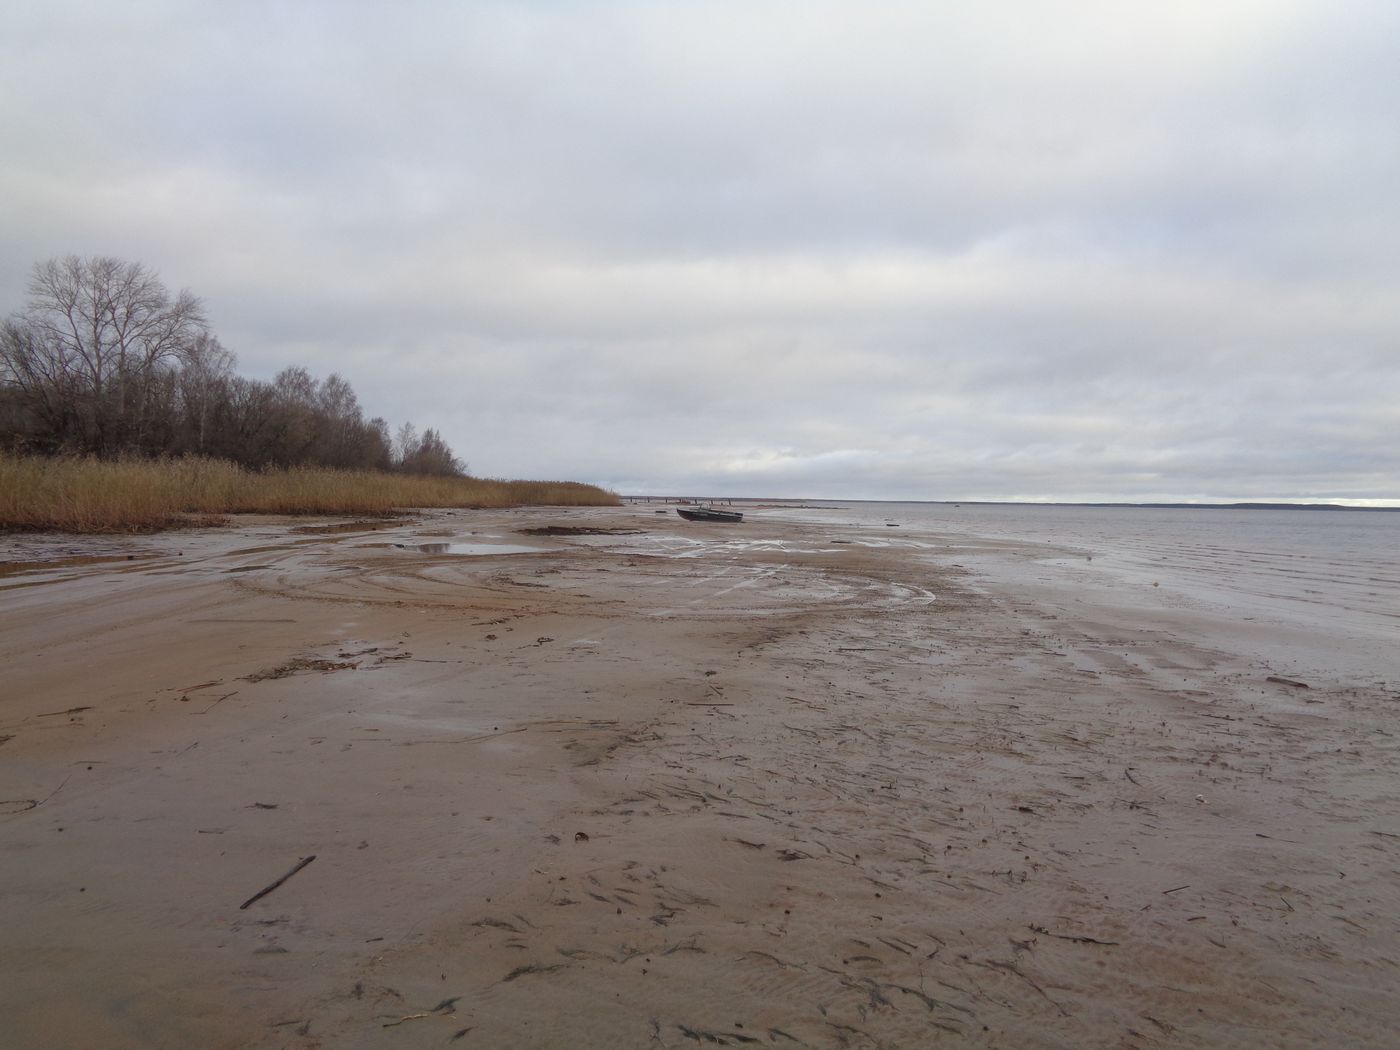 Остров Егорушкин и берег рядом, изображение ландшафта.